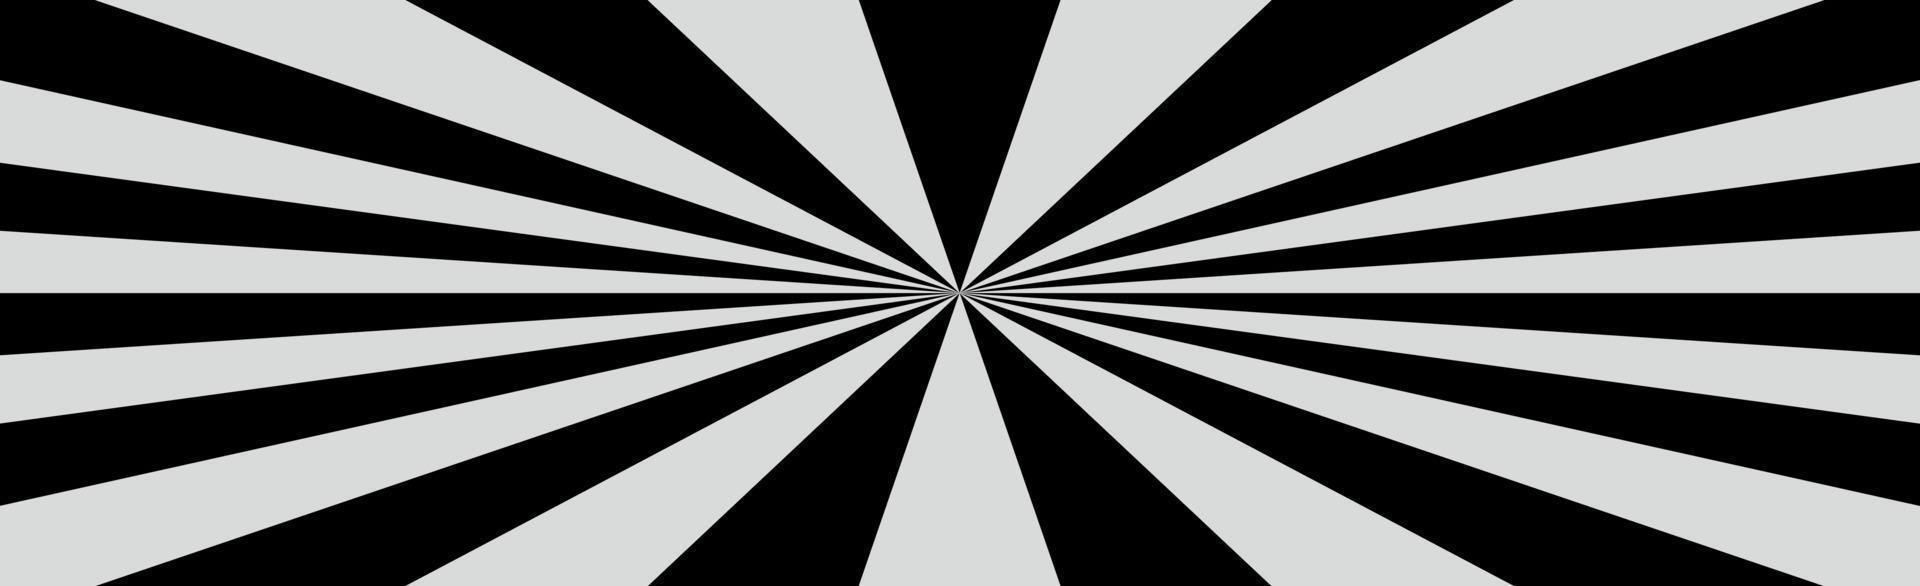 radiella svarta och vita strålar, panoramamönster textur bakgrund - vektor